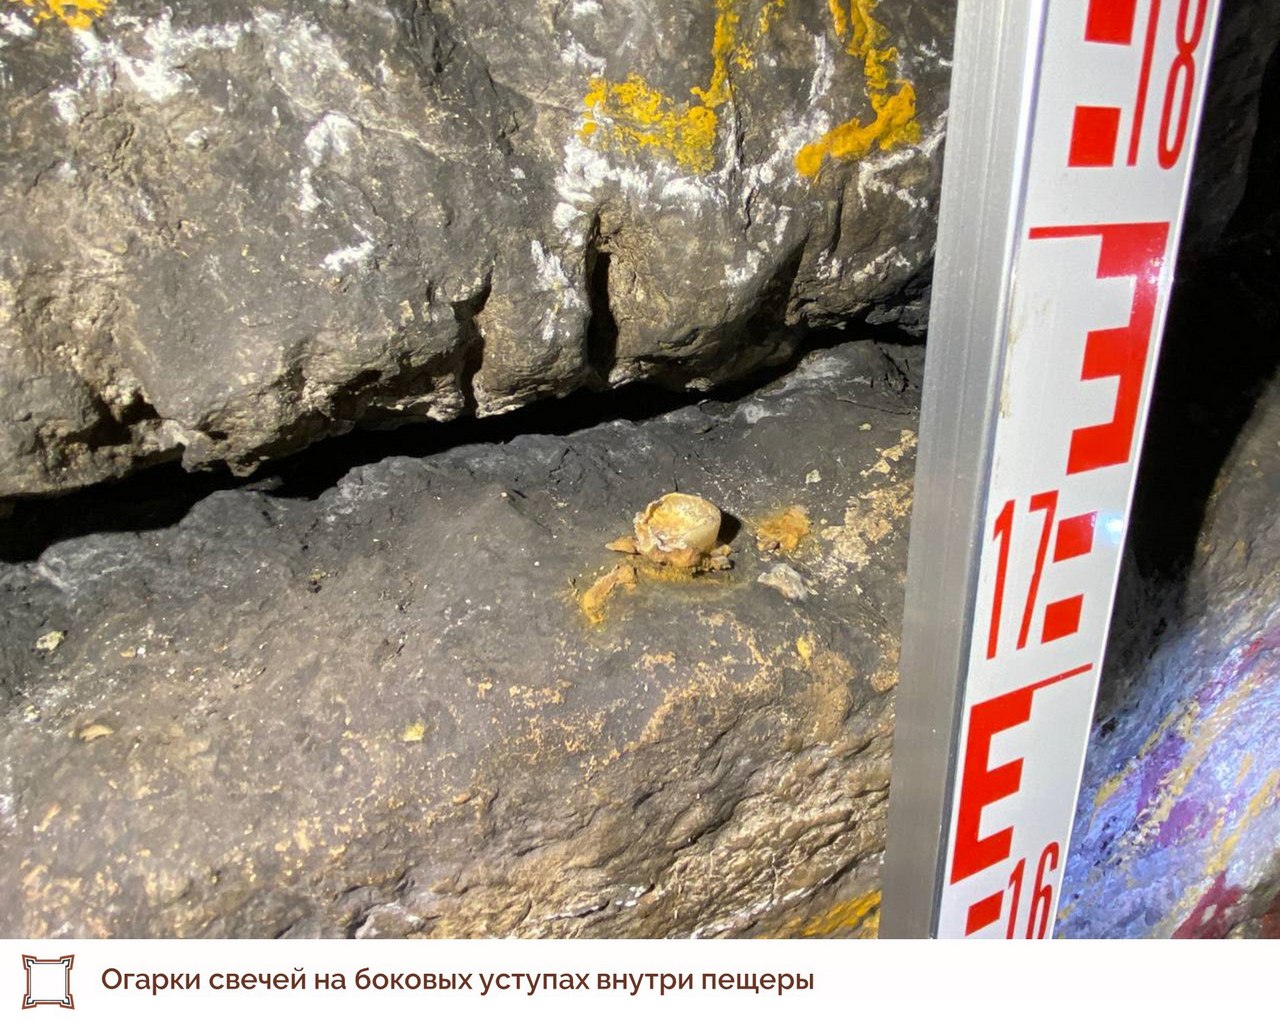 Бактерии и туристы разрушают экосистему знаменитой Игнатьевской пещеры